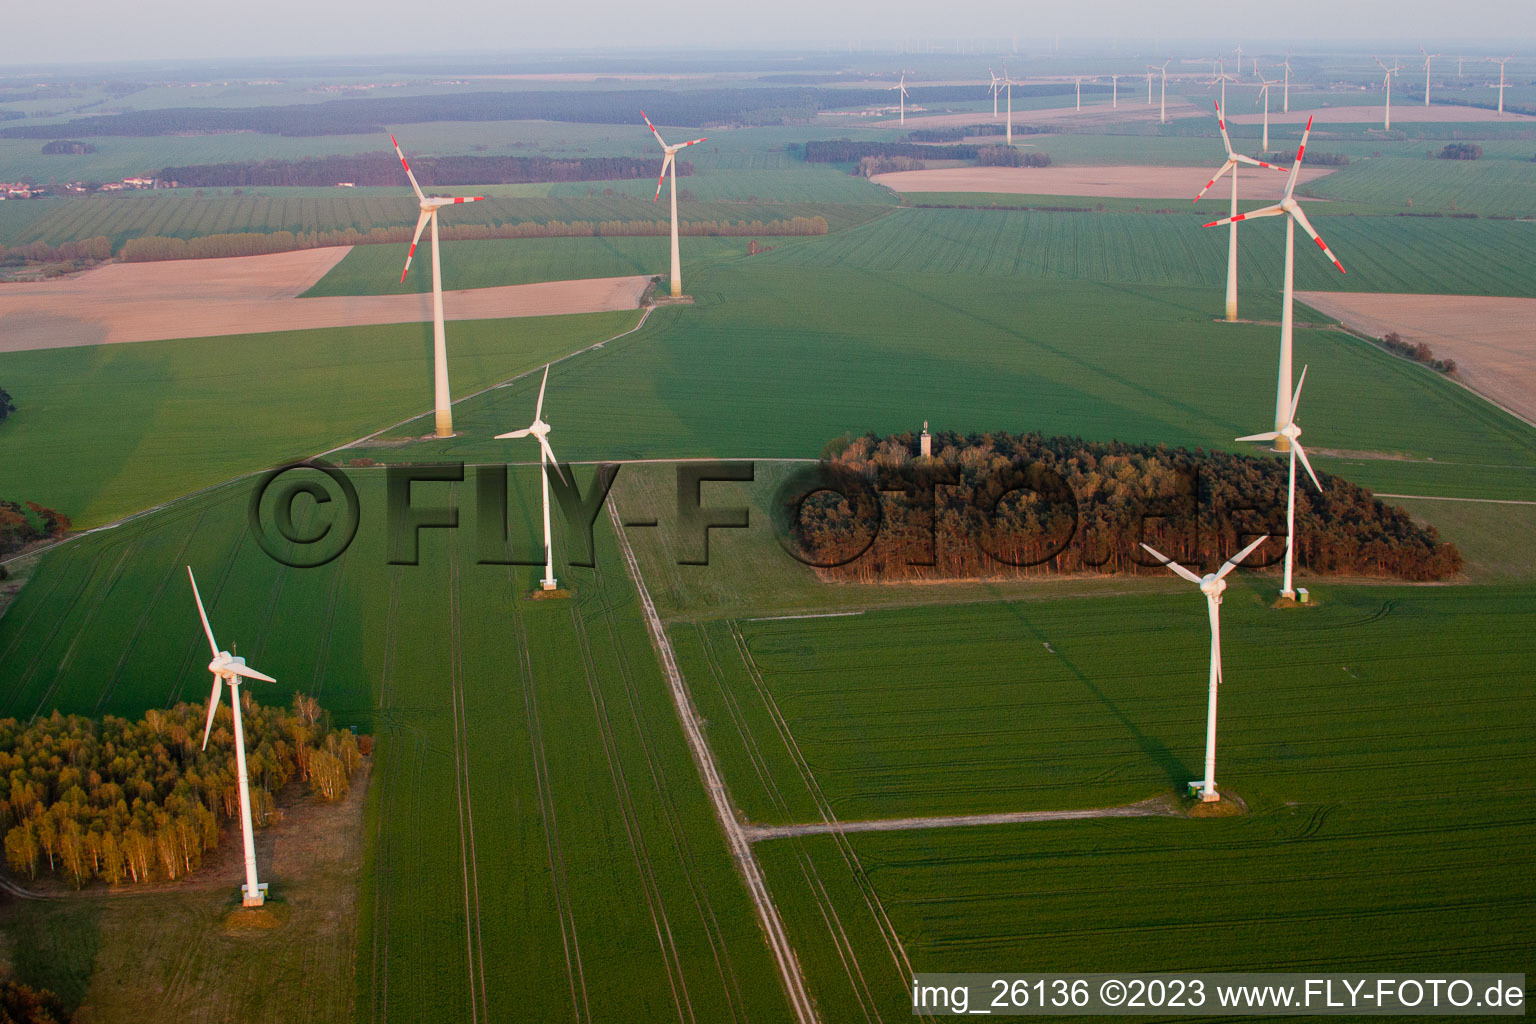 Luftbild von Windpark bei Neumarkt, Brandenburg, Deutschland